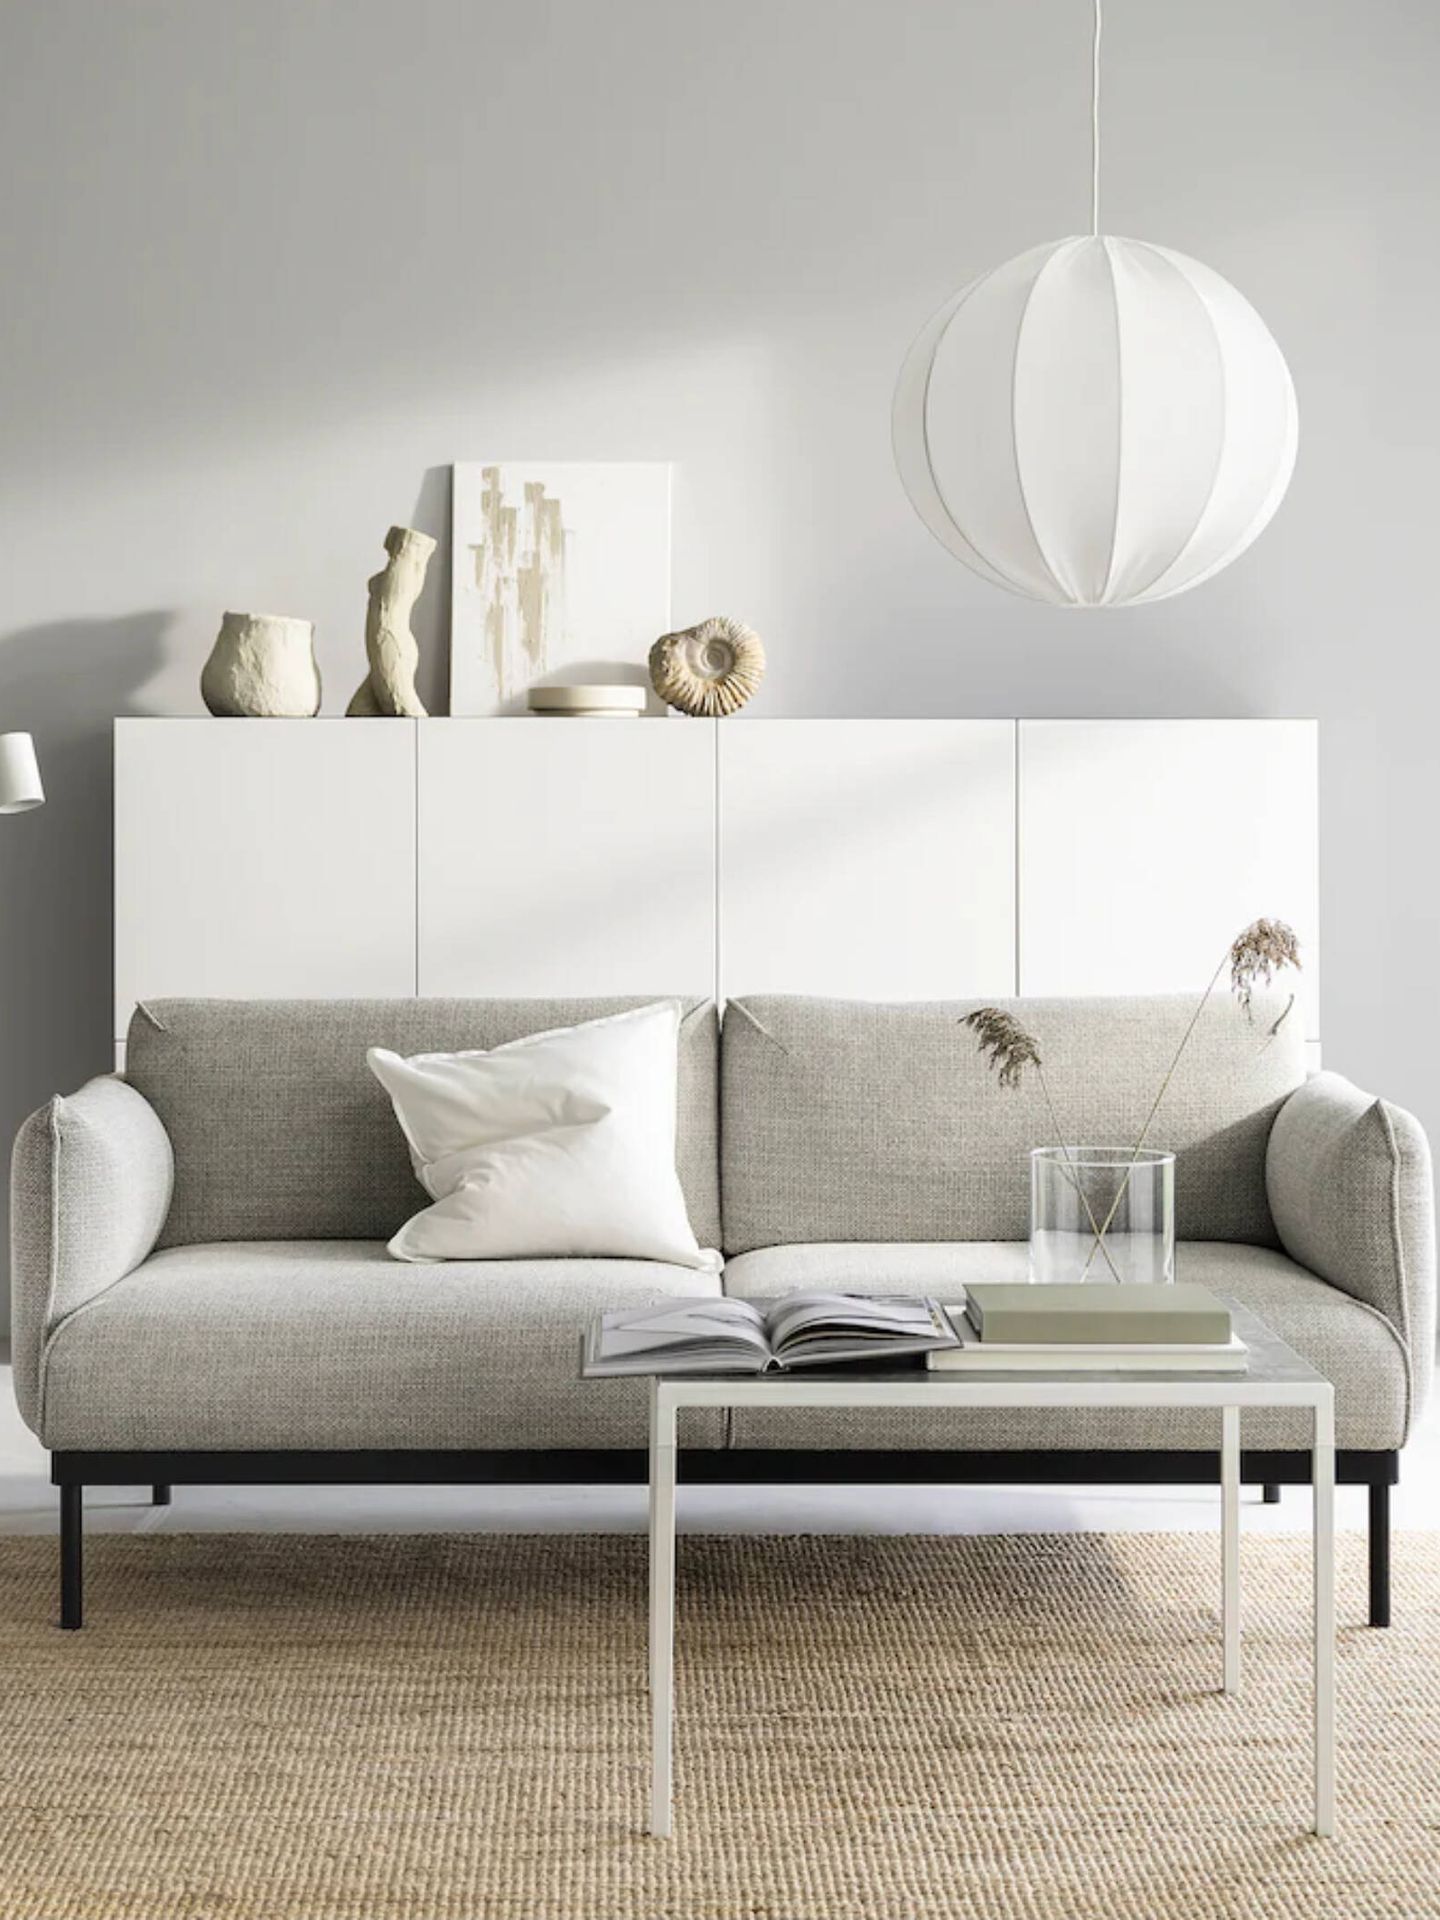 El nuevo sofá de Ikea es ideal si buscas muebles para tu salón pequeño. (Cortesía/Ikea)